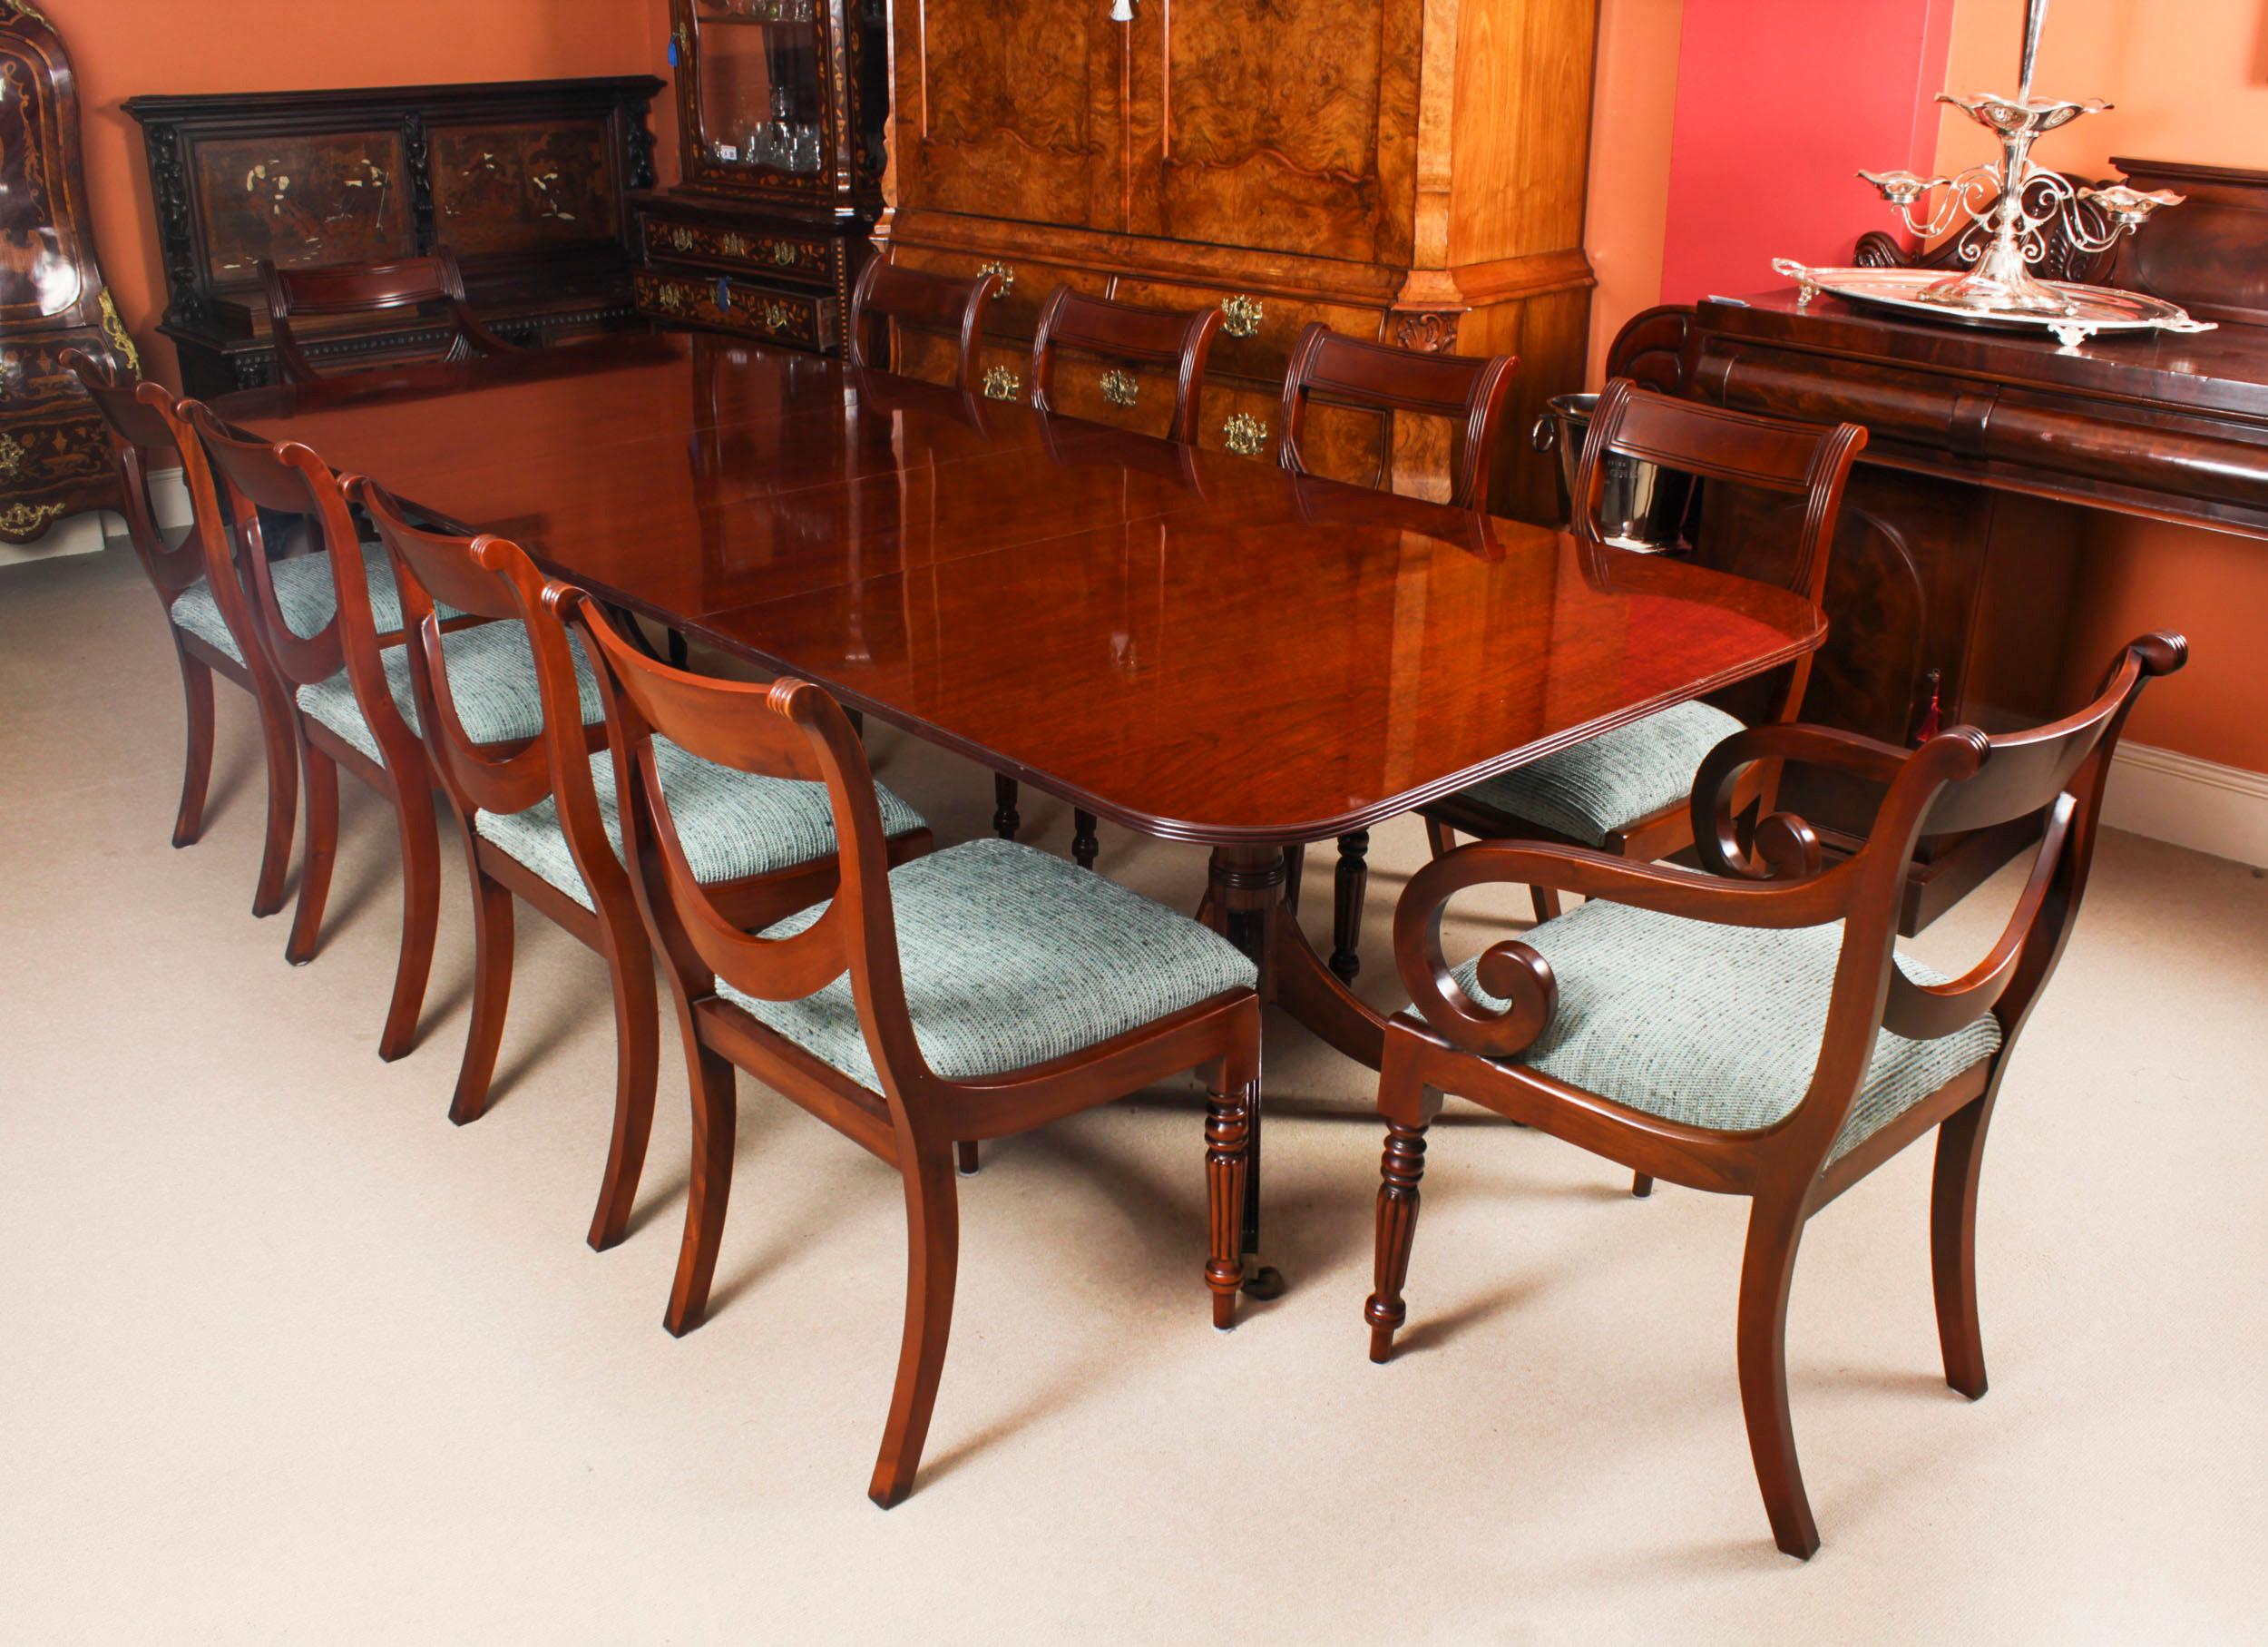 Dies ist  ein fabelhafter Vintage-Regency-Revival-Esstisch des Meisters William Tillman, datiert CIRCA 1980.

Der Tisch ist aus massivem, geflammtem Mahagoni gefertigt und steht auf zwei gedrechselten Säulen mit vier Säbelbeinen, die mit